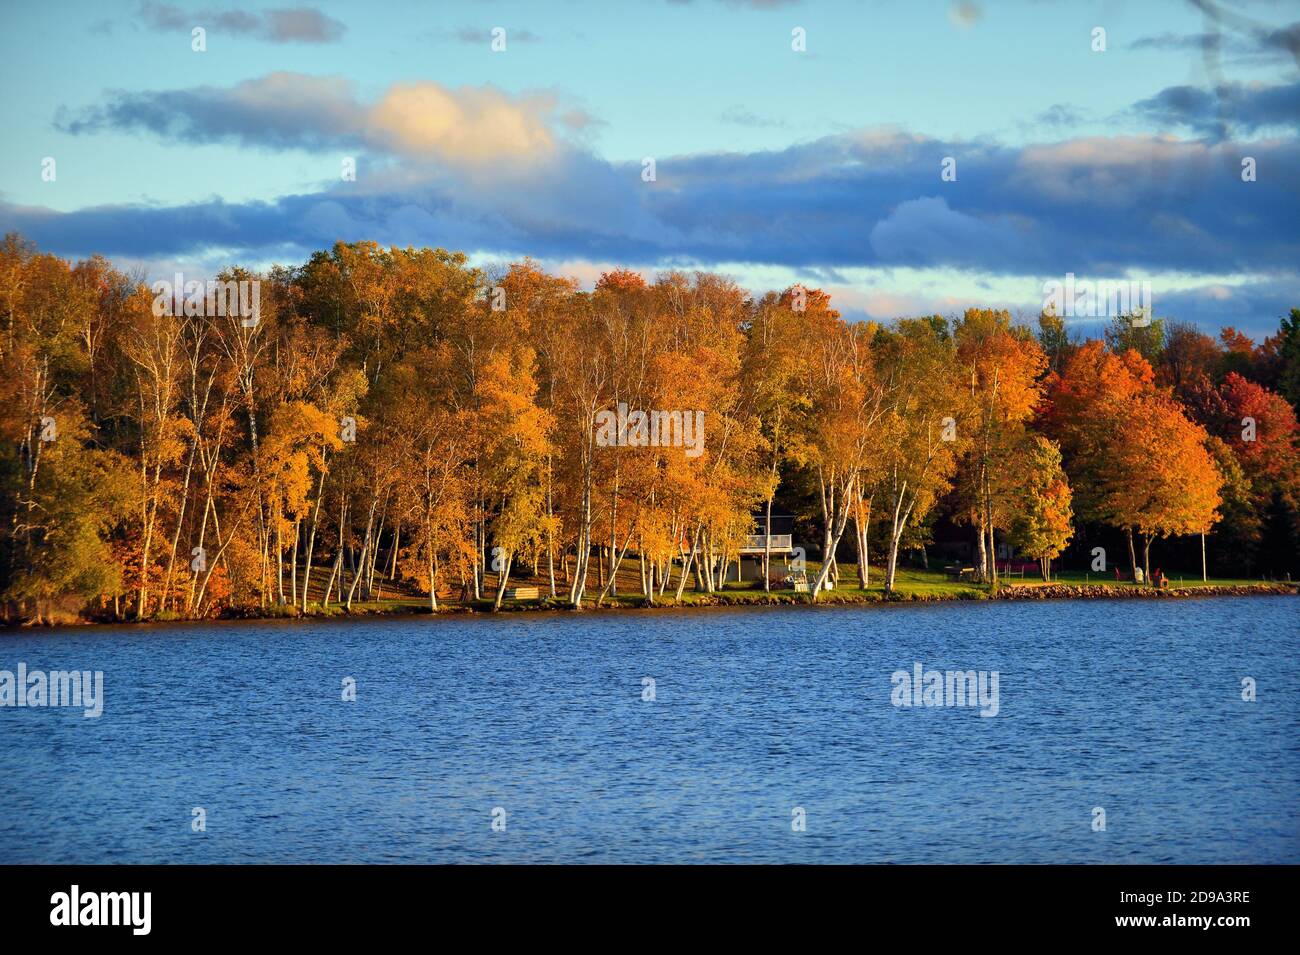 Trout Lake, Michigan, Stati Uniti. L'autunno e il sole nel tardo pomeriggio scenderanno su un tratto di costa lungo il lago Trout nella penisola superiore del Michigan. Foto Stock